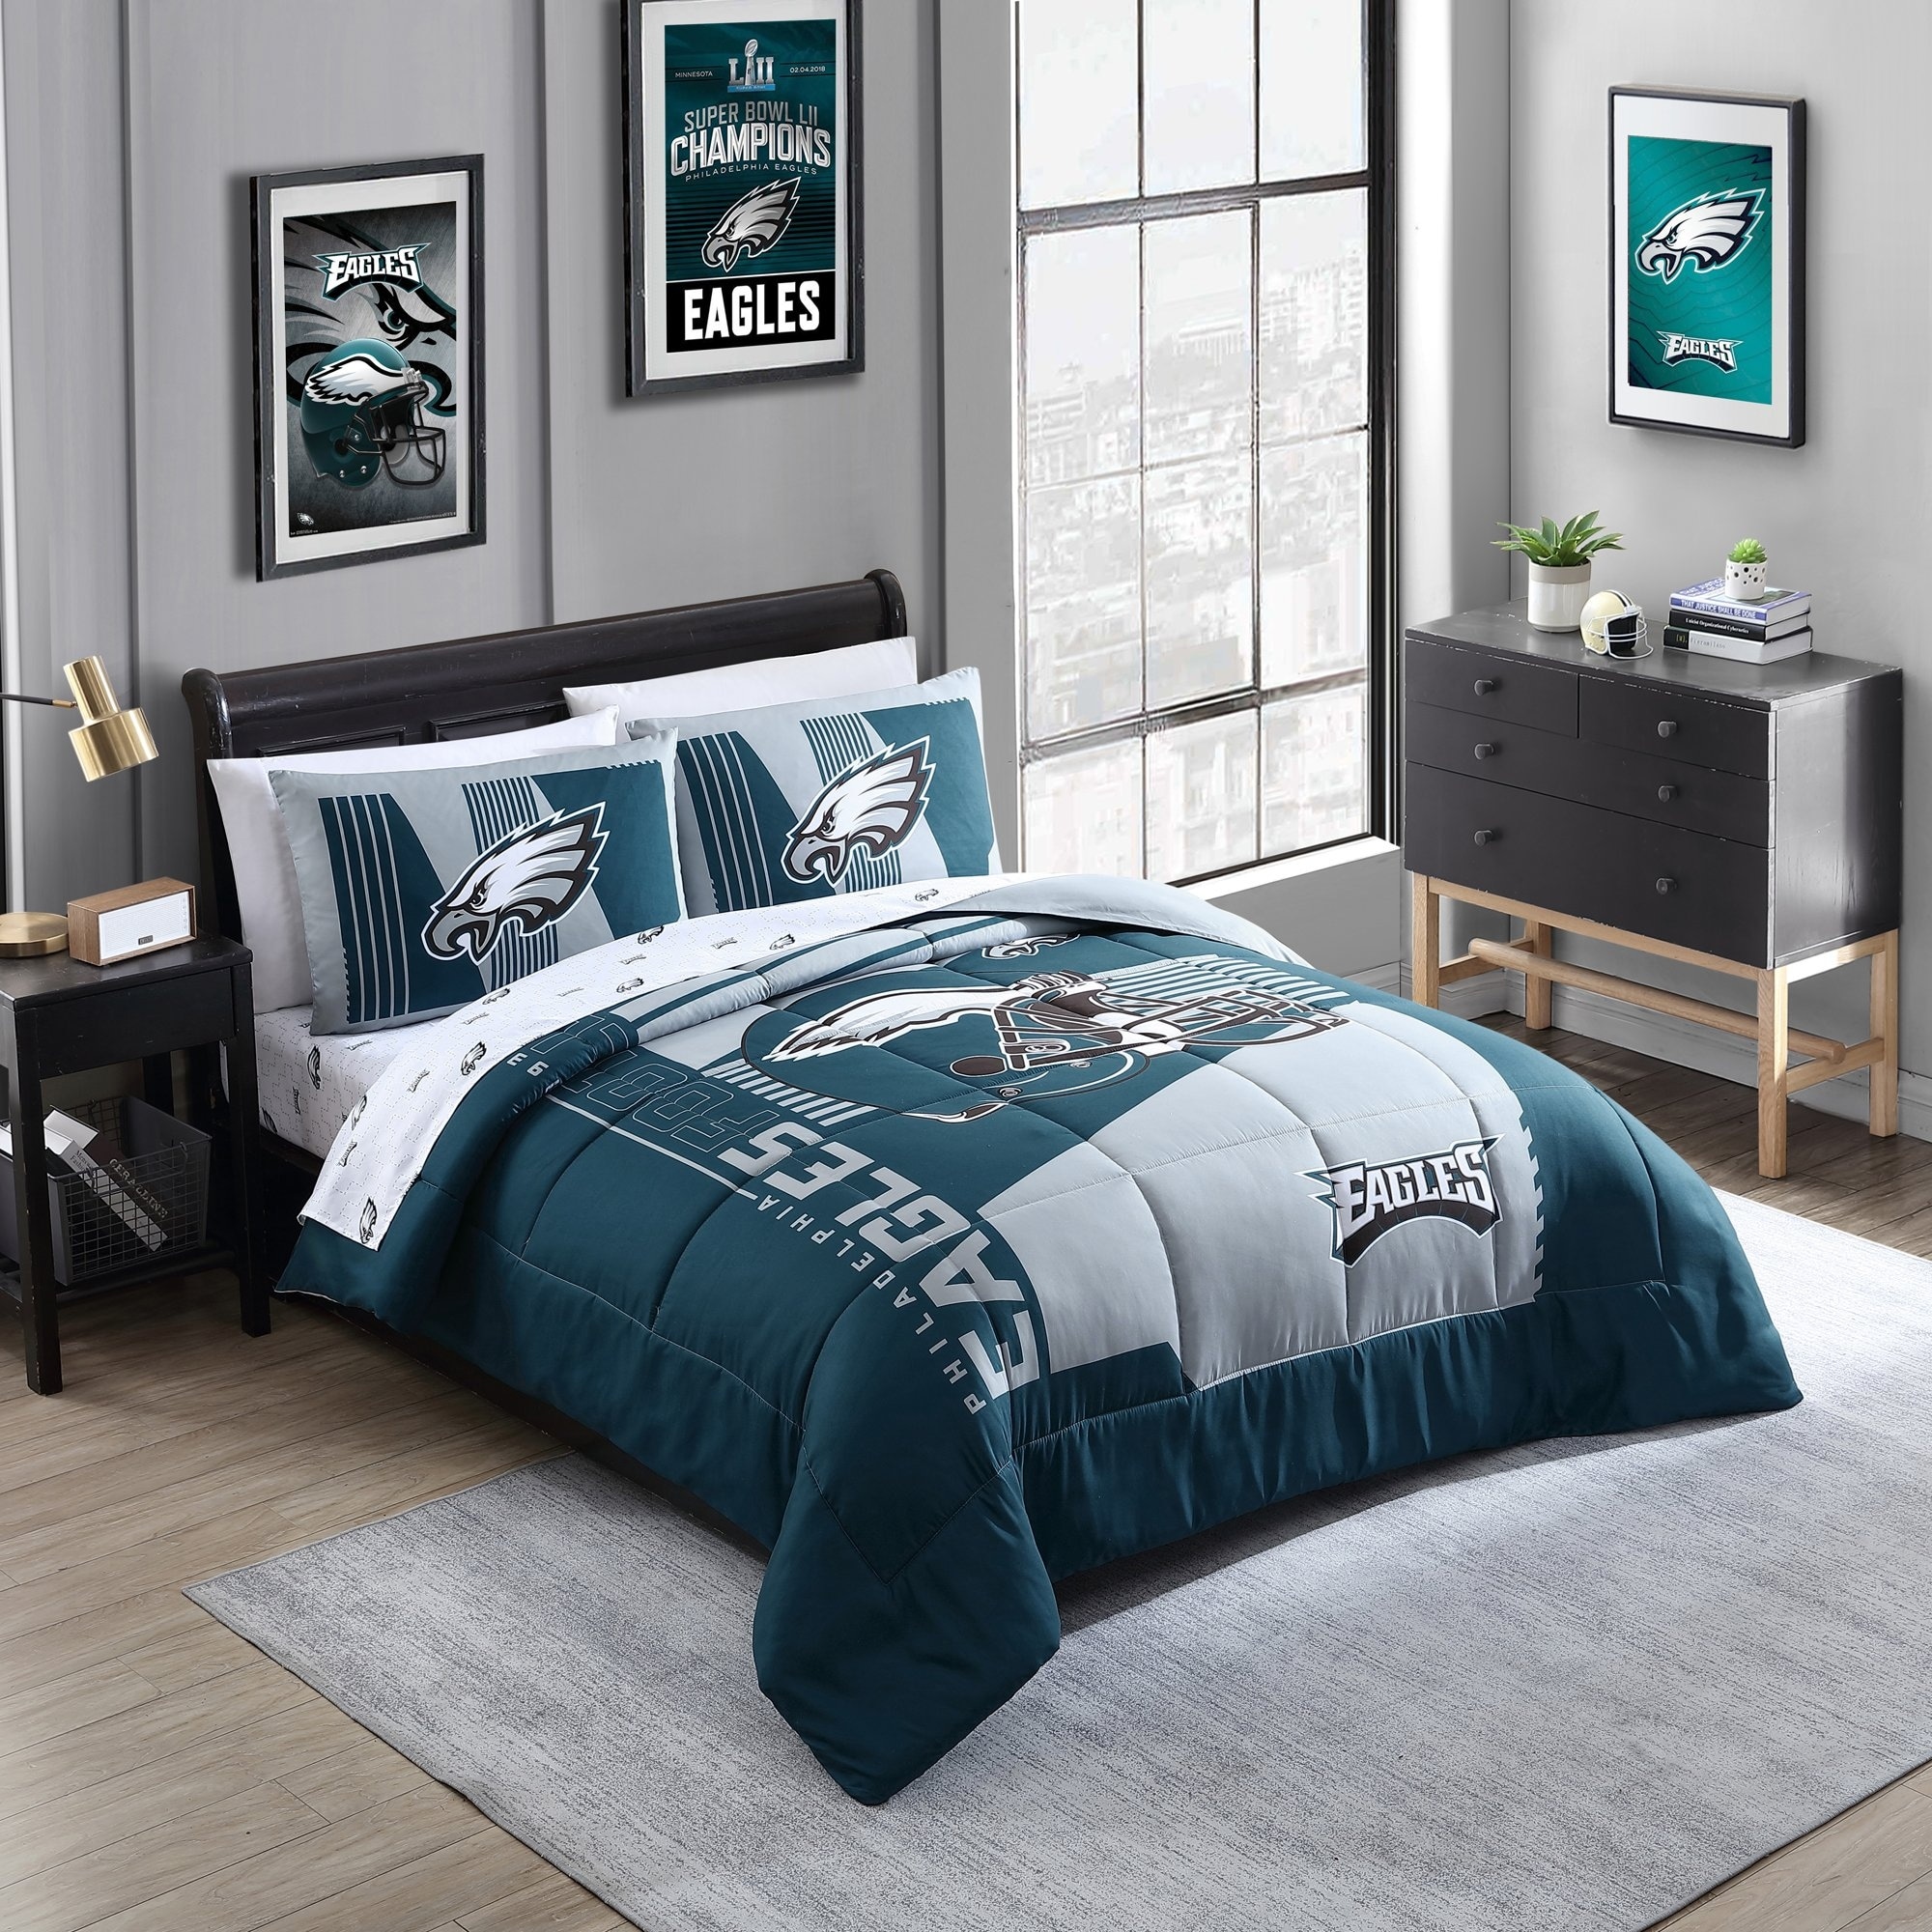 Philadelphia Eagles NFL Licensed 'Status' Bed In A Bag Comforter & Sheet Set